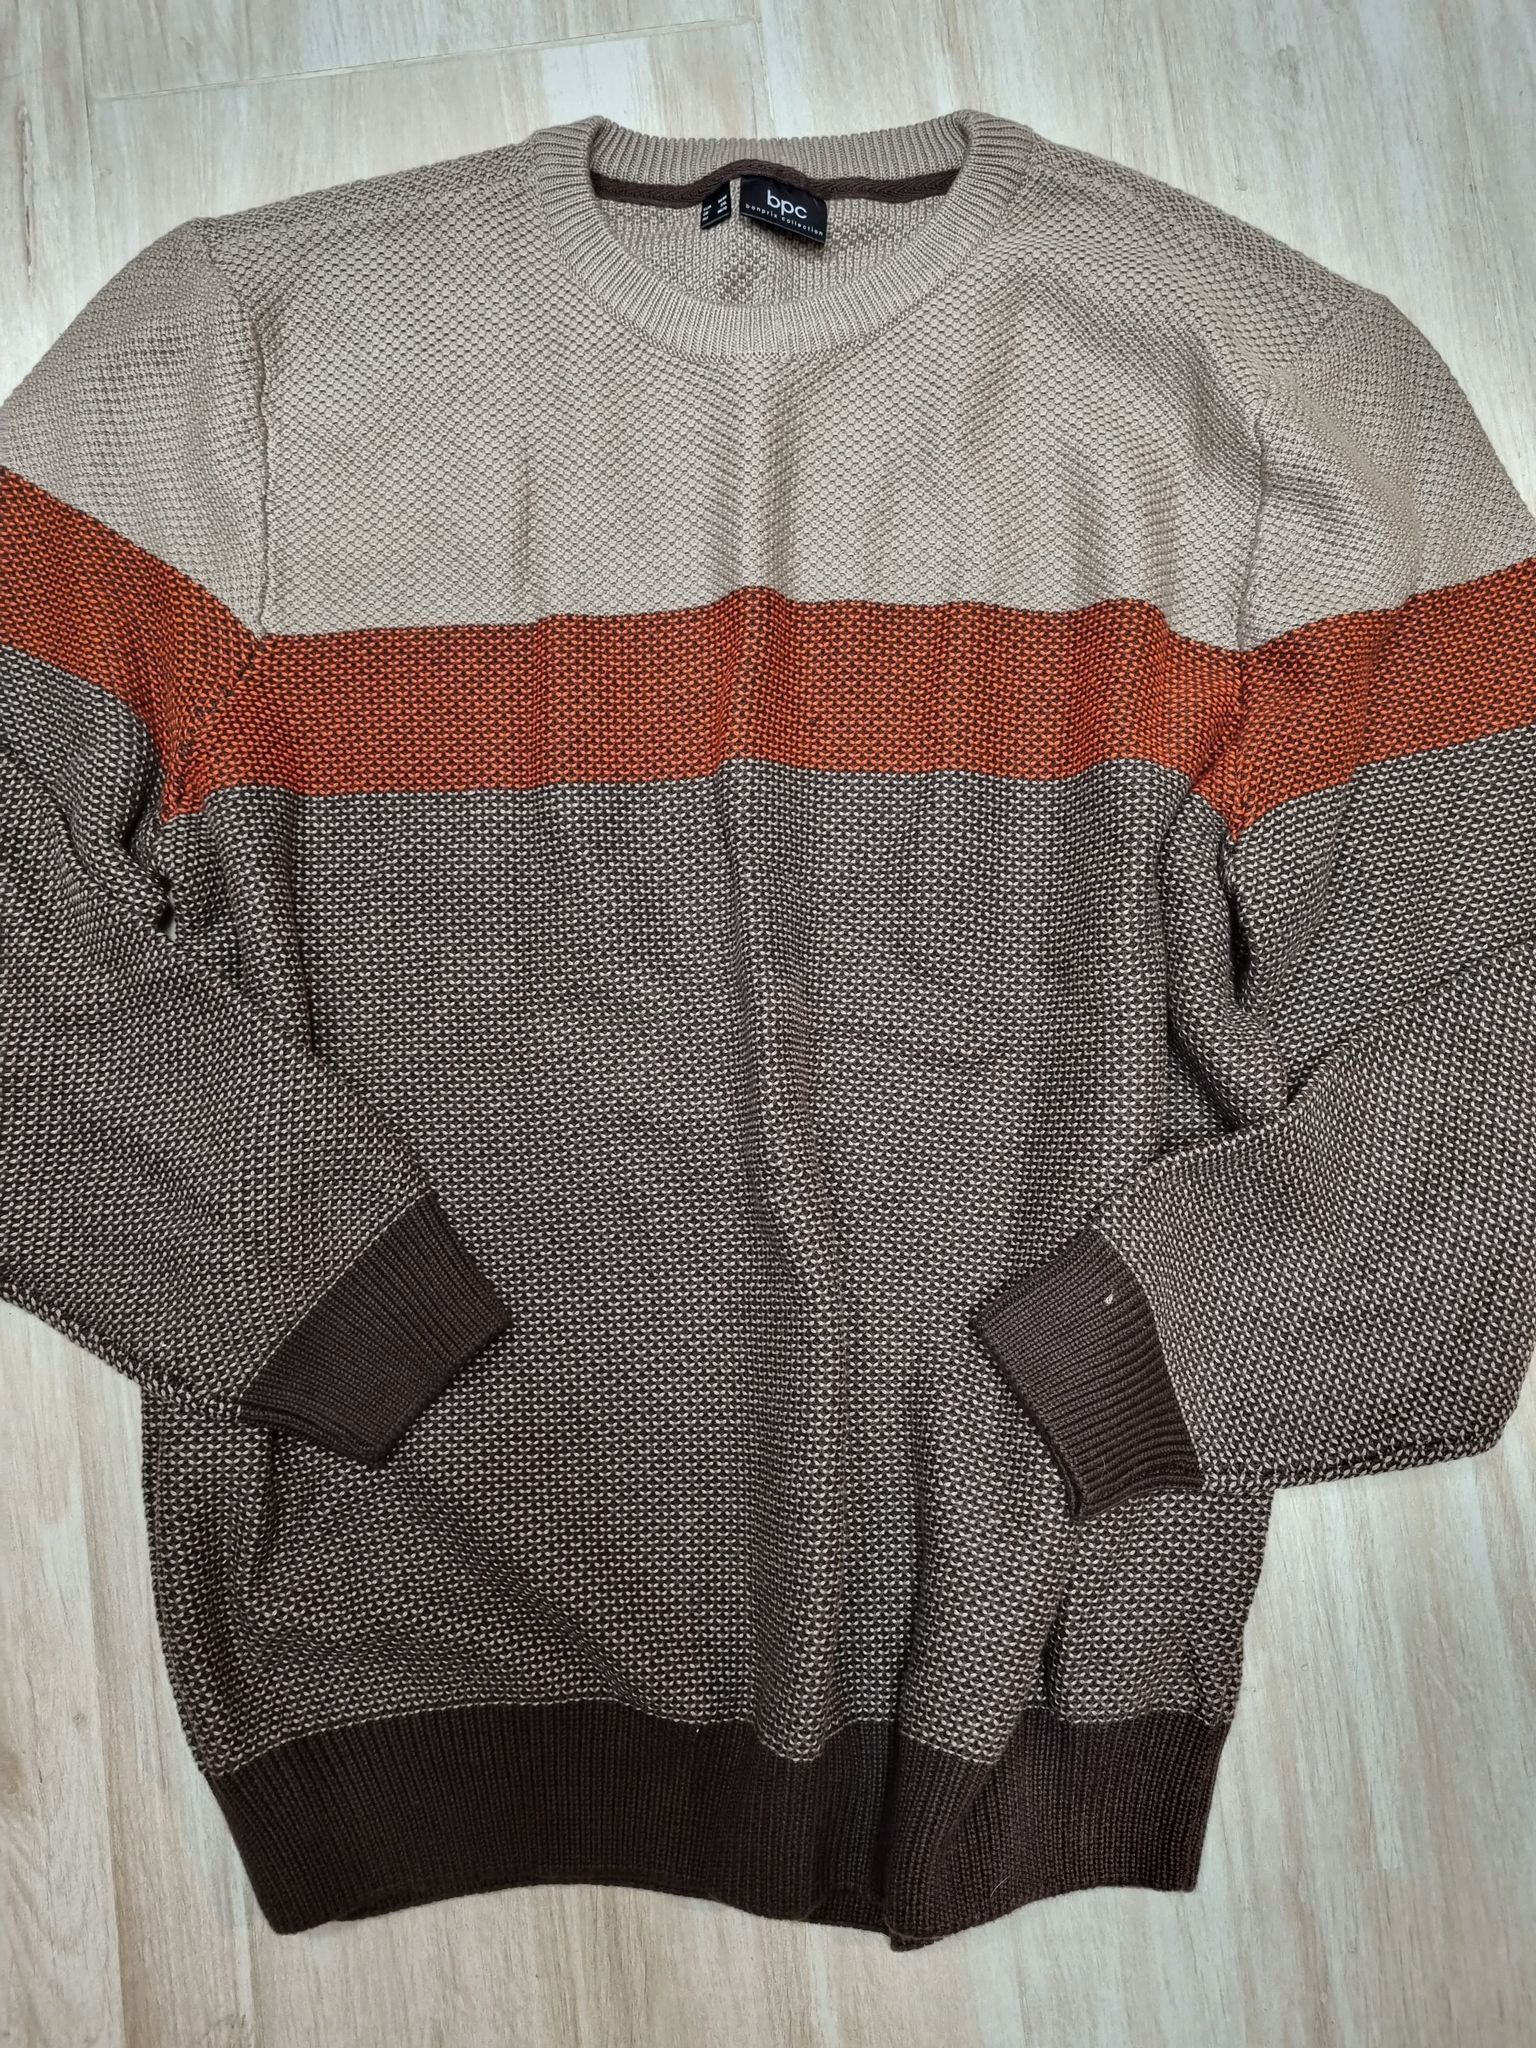 B.P.C sweter męski melanż brązowy 3XL